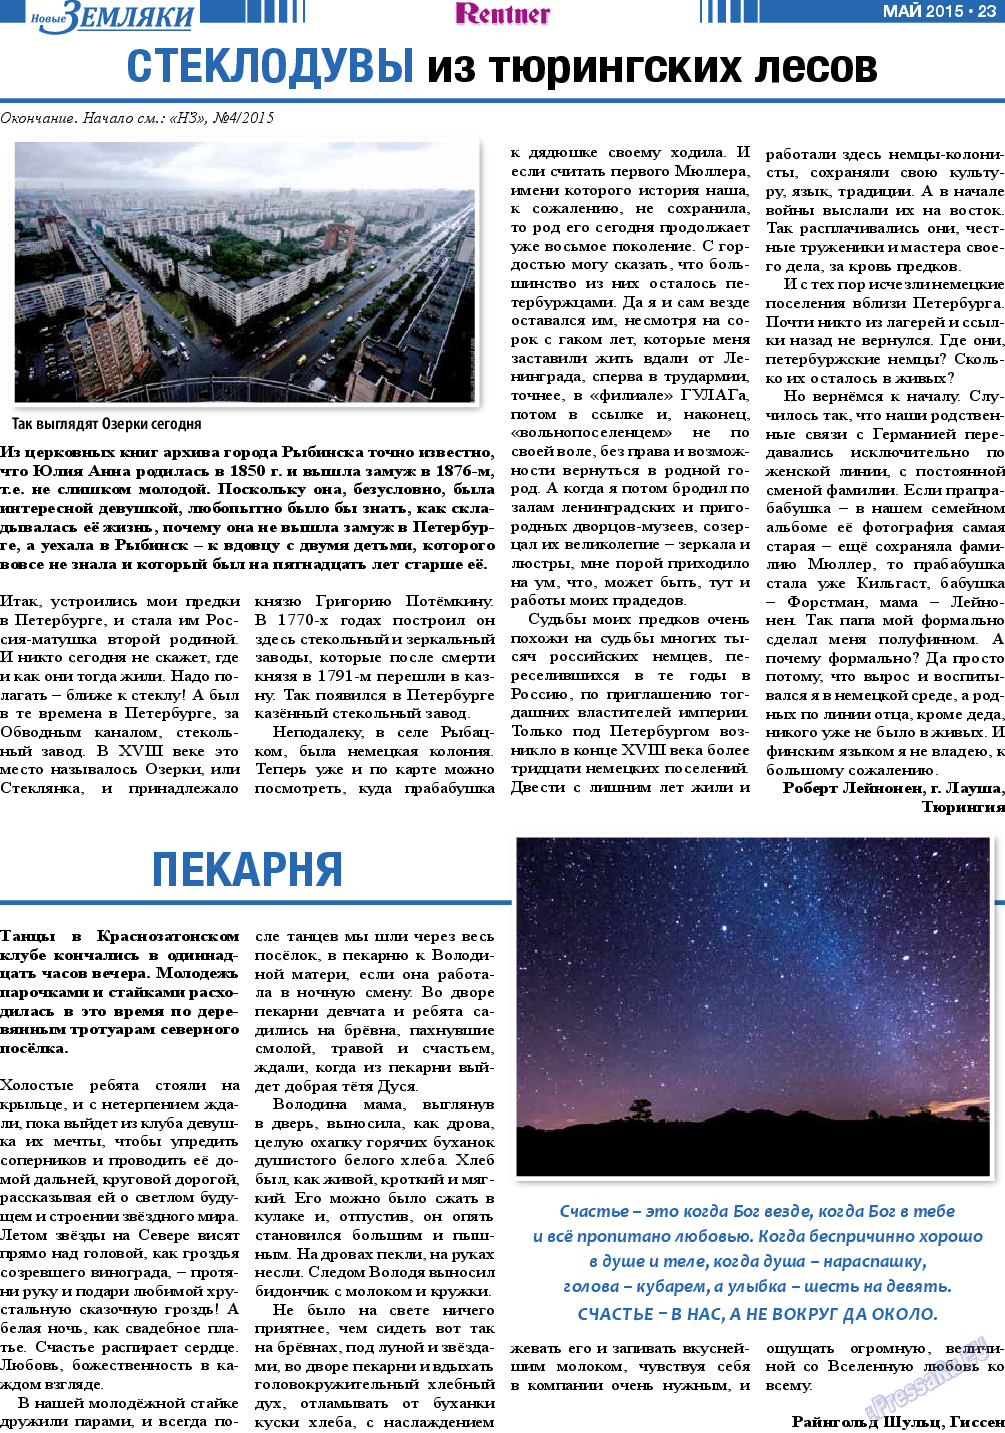 Новые Земляки, газета. 2015 №5 стр.23